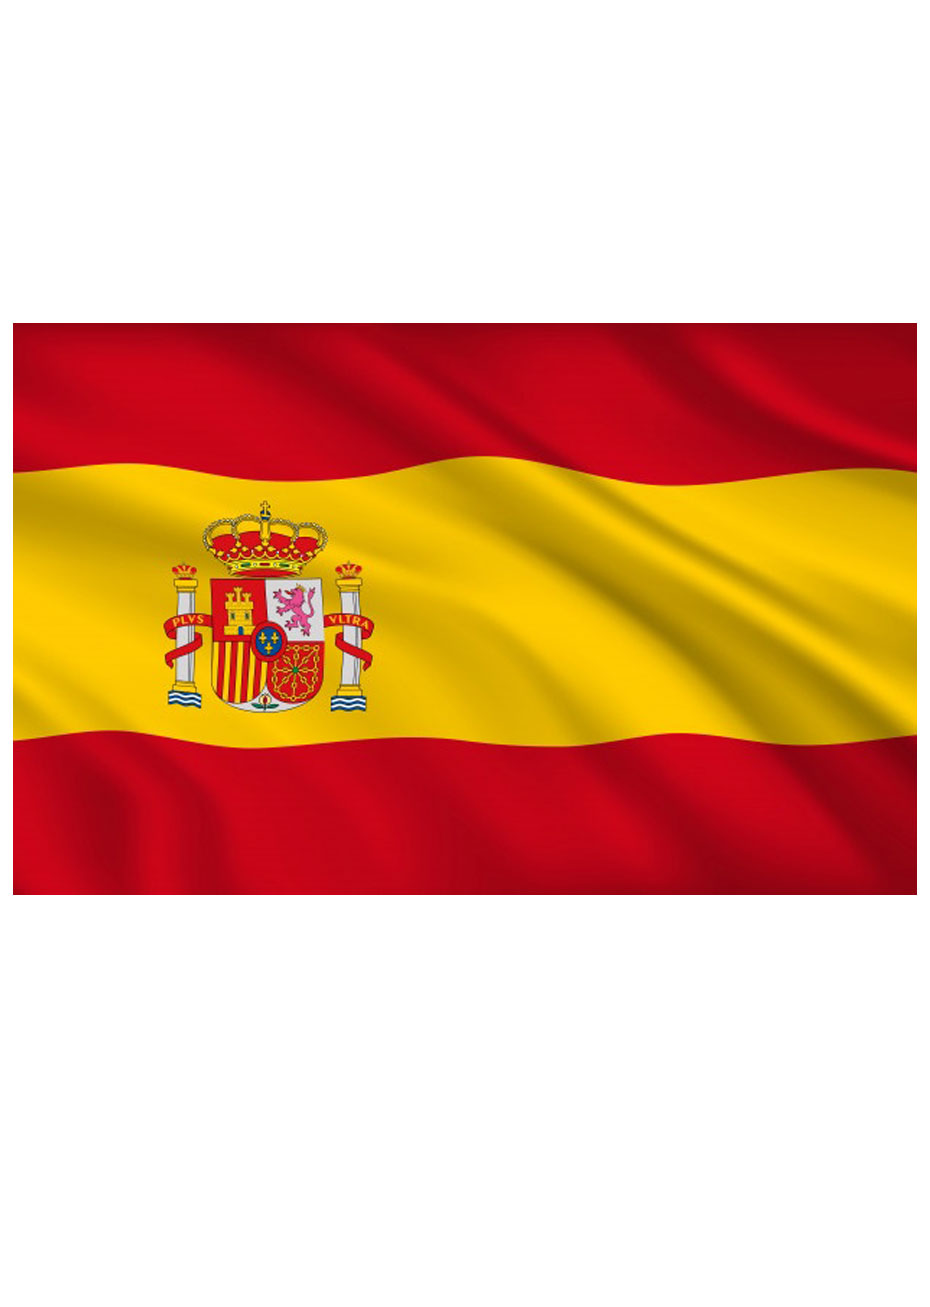 Décalcomanie Drapeau Espagnol - Espagne - Dimension au choix